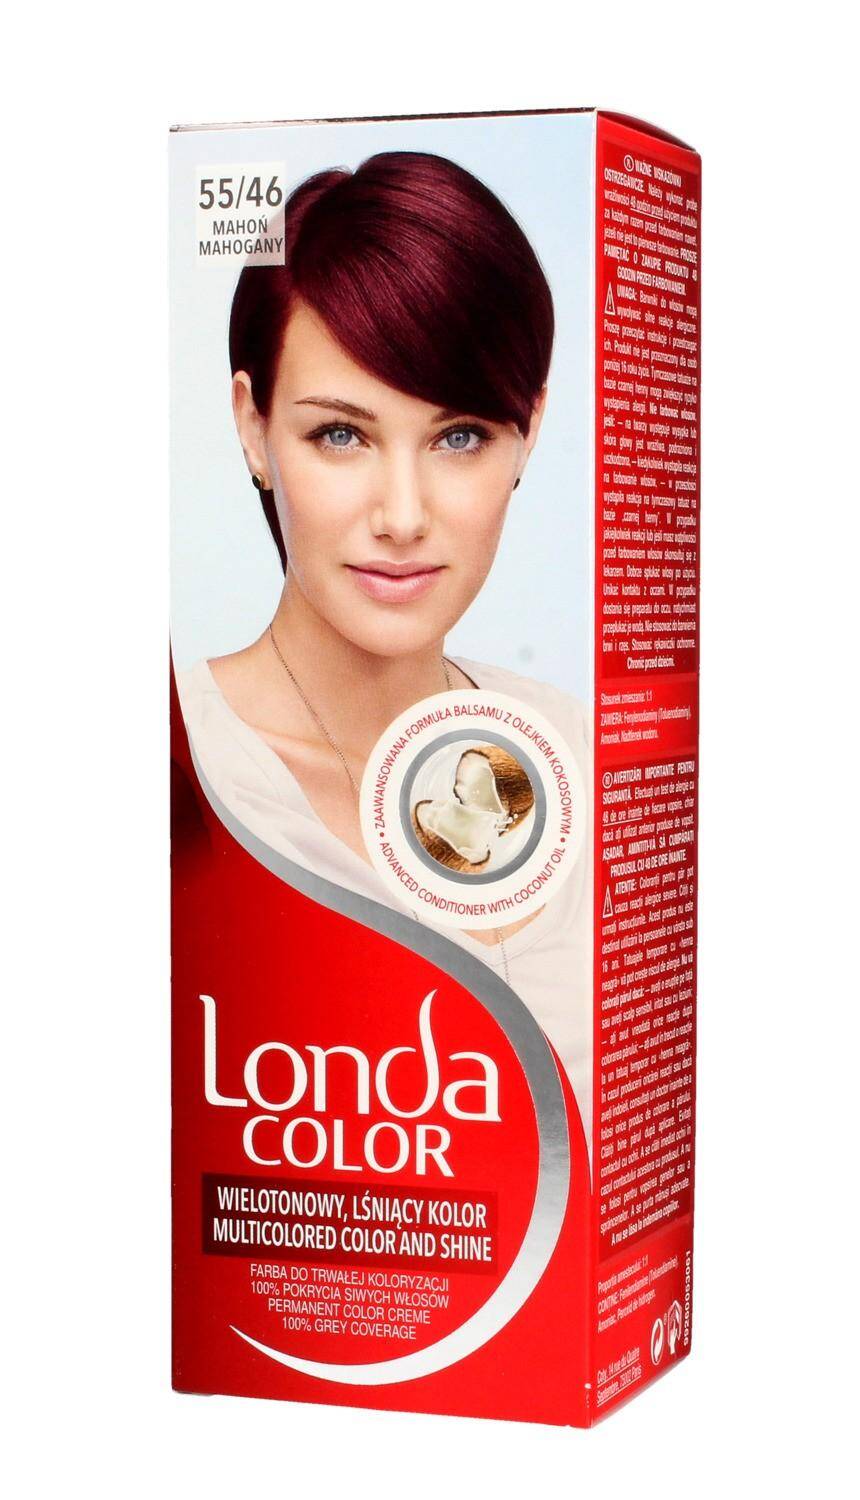 LondaColor Farba do włosów 55/46 Mahoń (Zdjęcie 1)